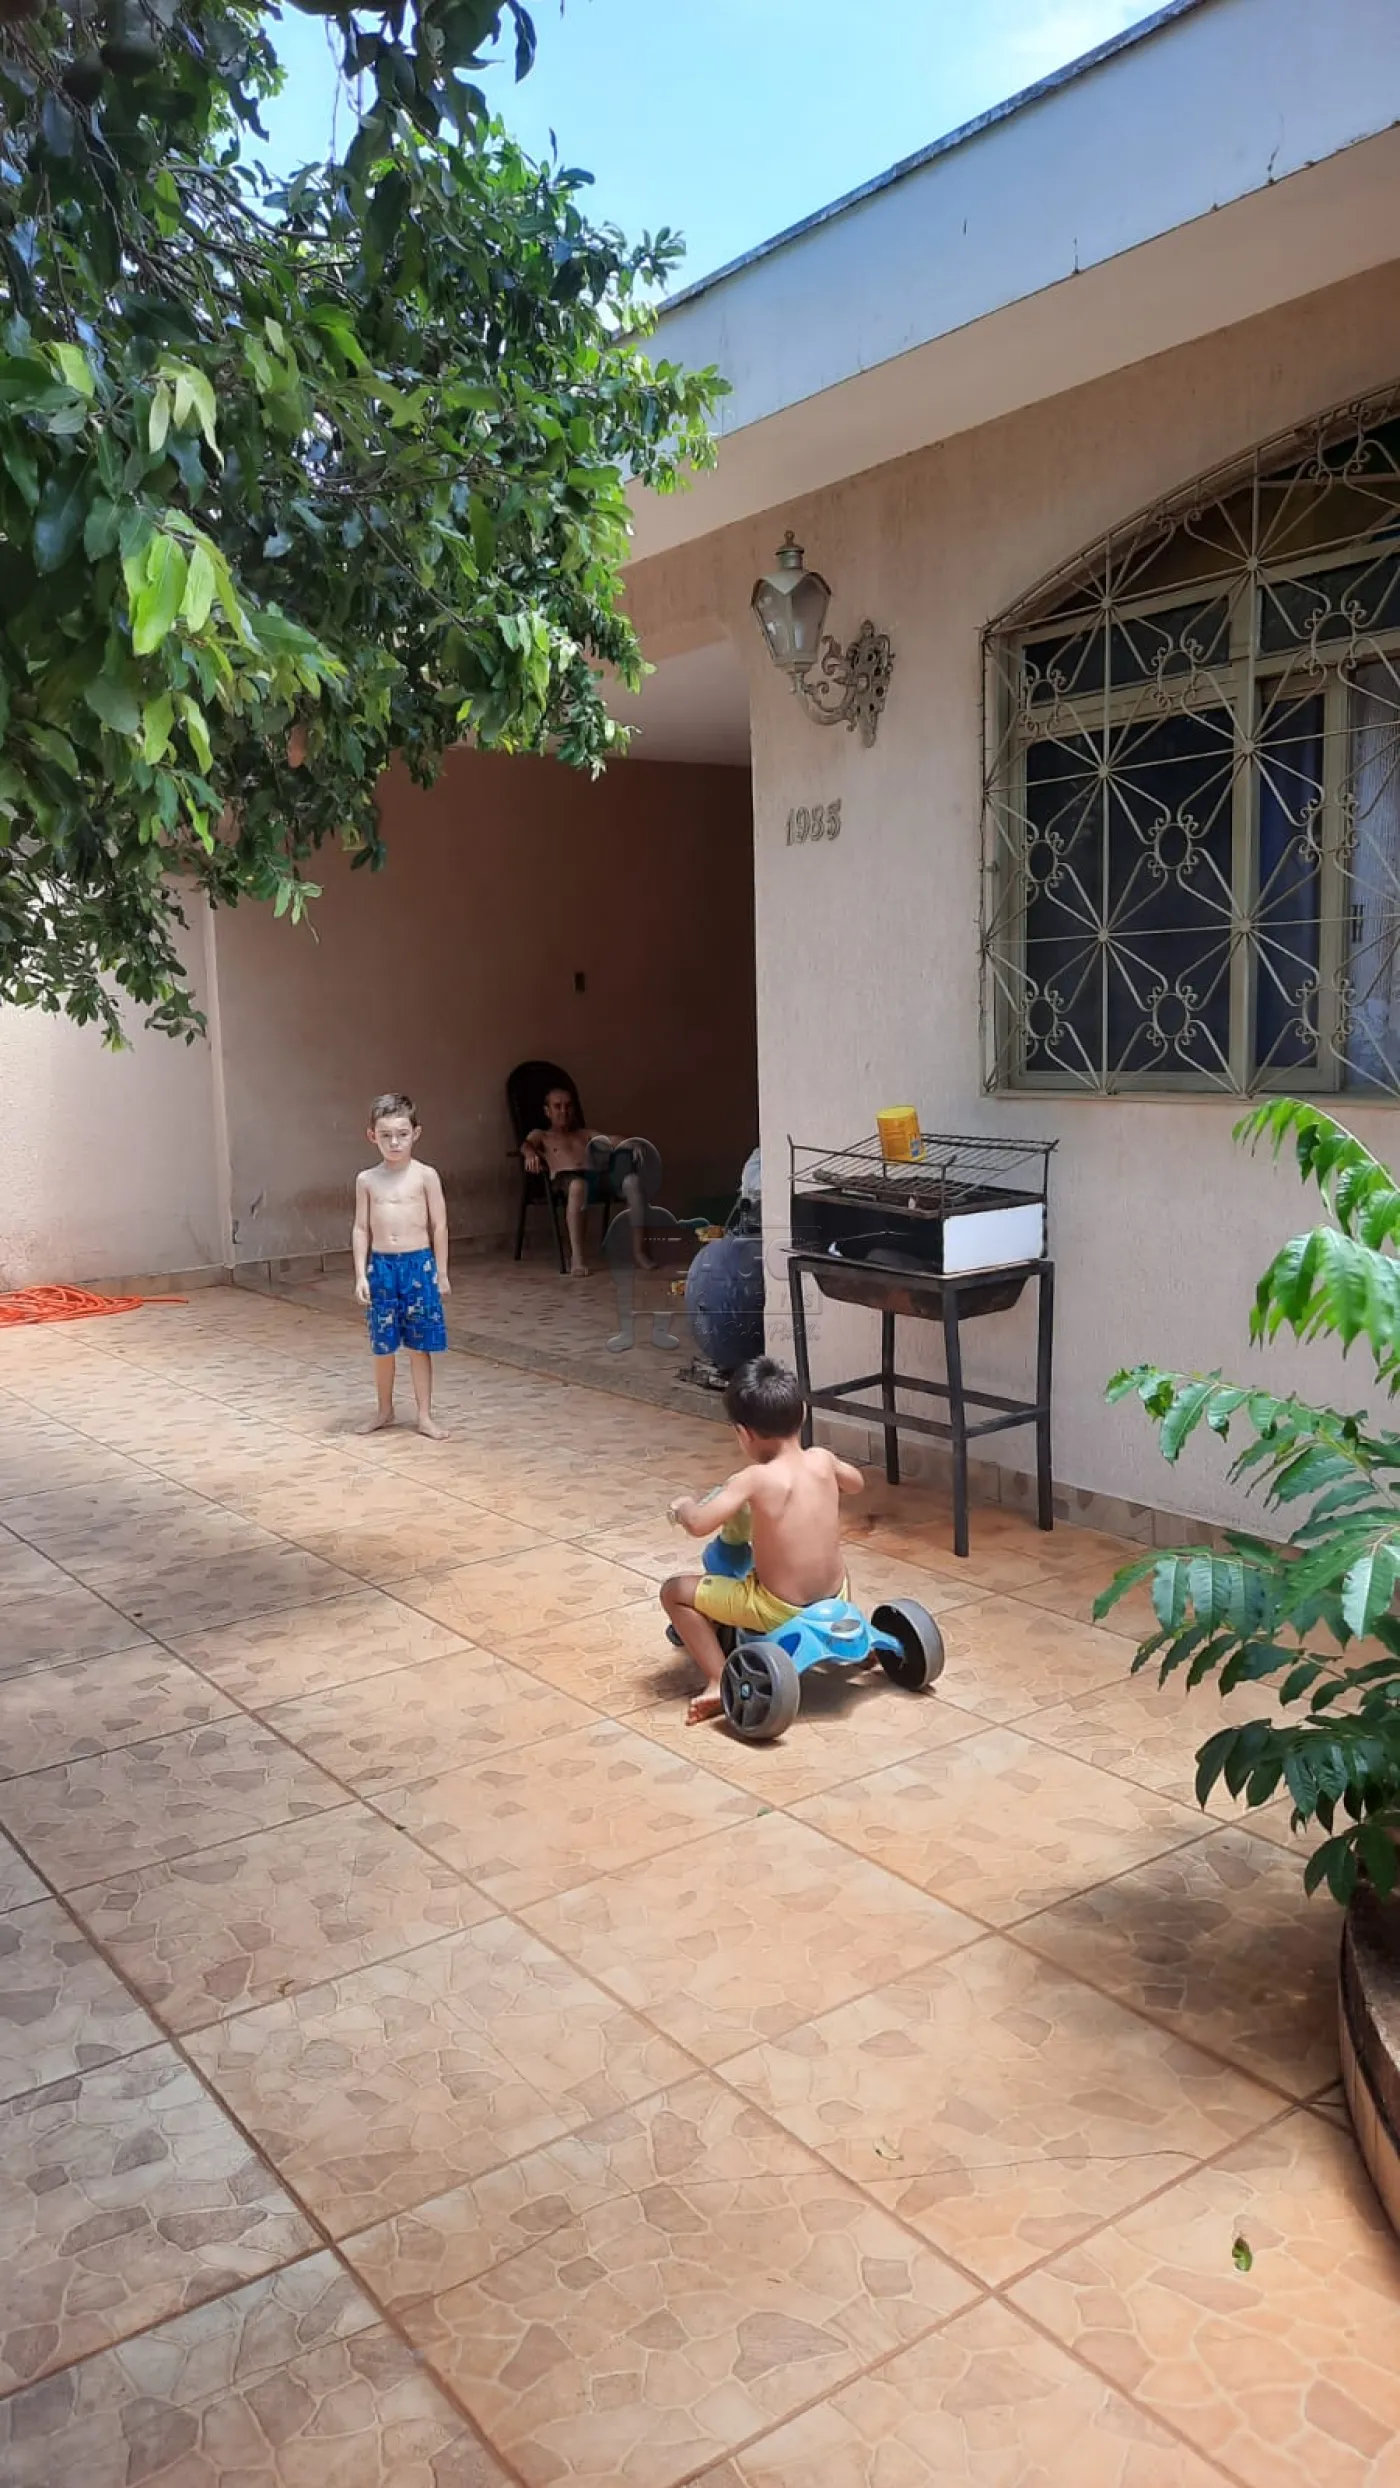 Comprar Casas / Padrão em Ribeirão Preto R$ 380.000,00 - Foto 16